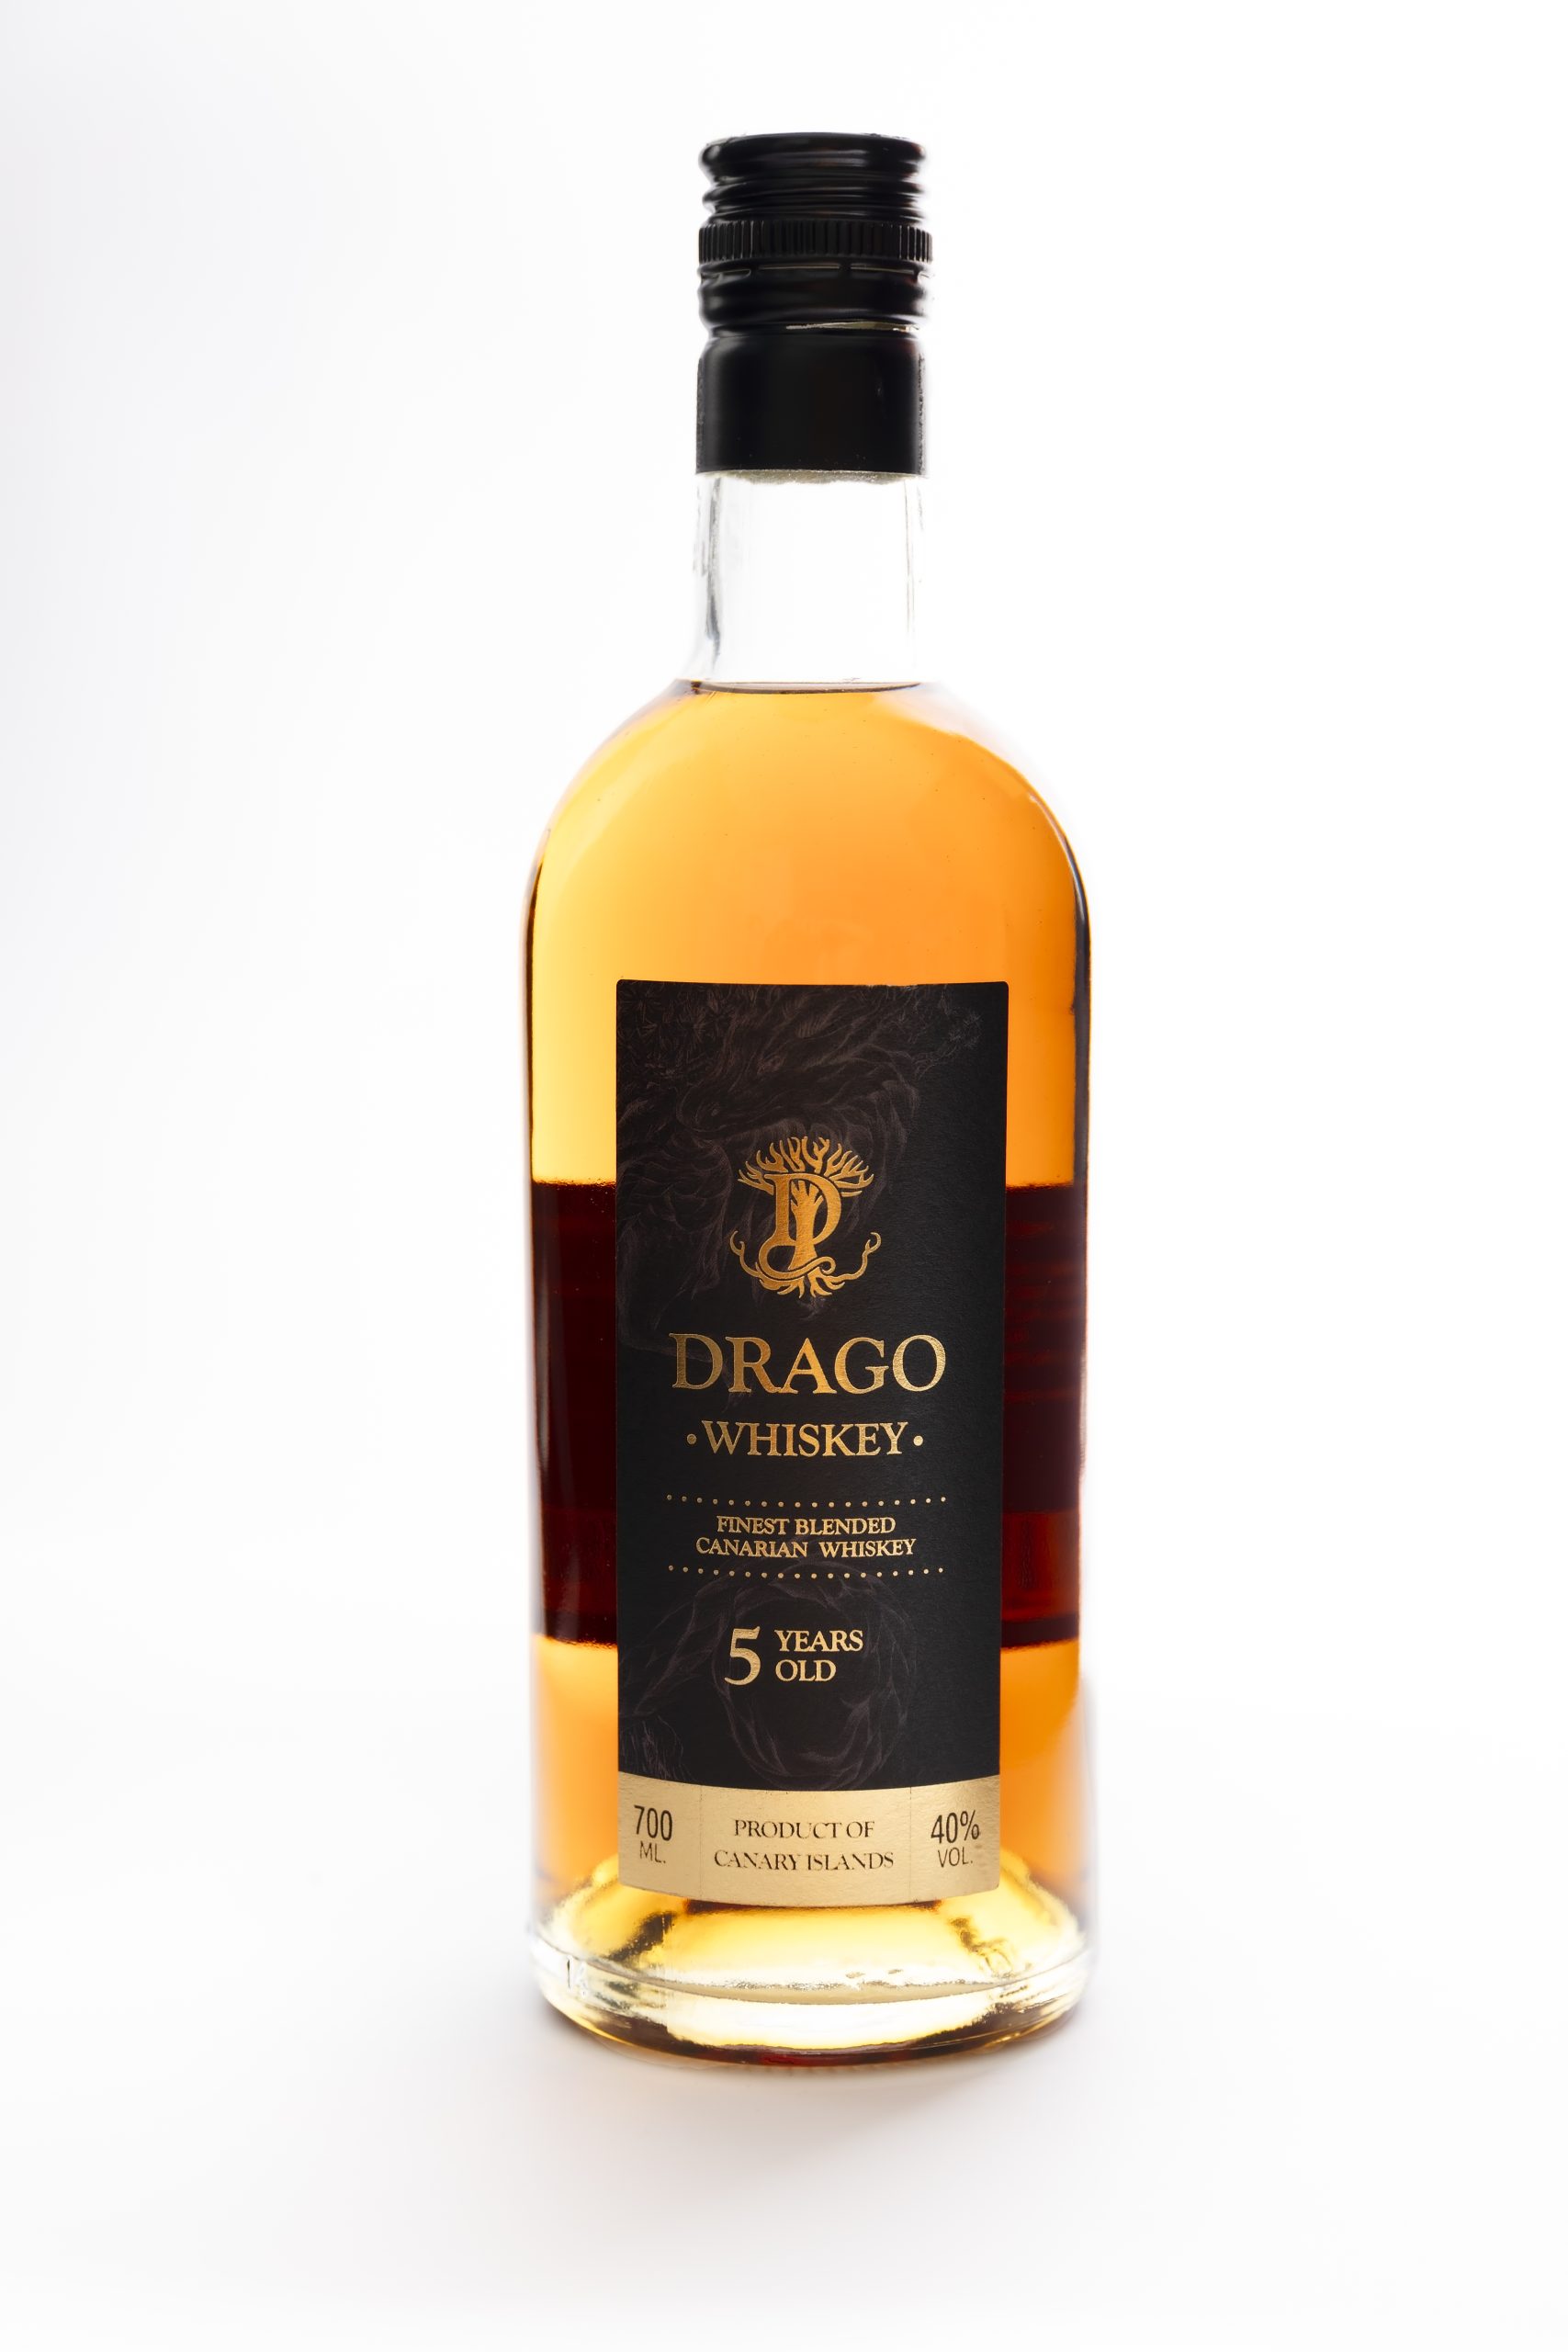 Drago Whiskey bottle shot